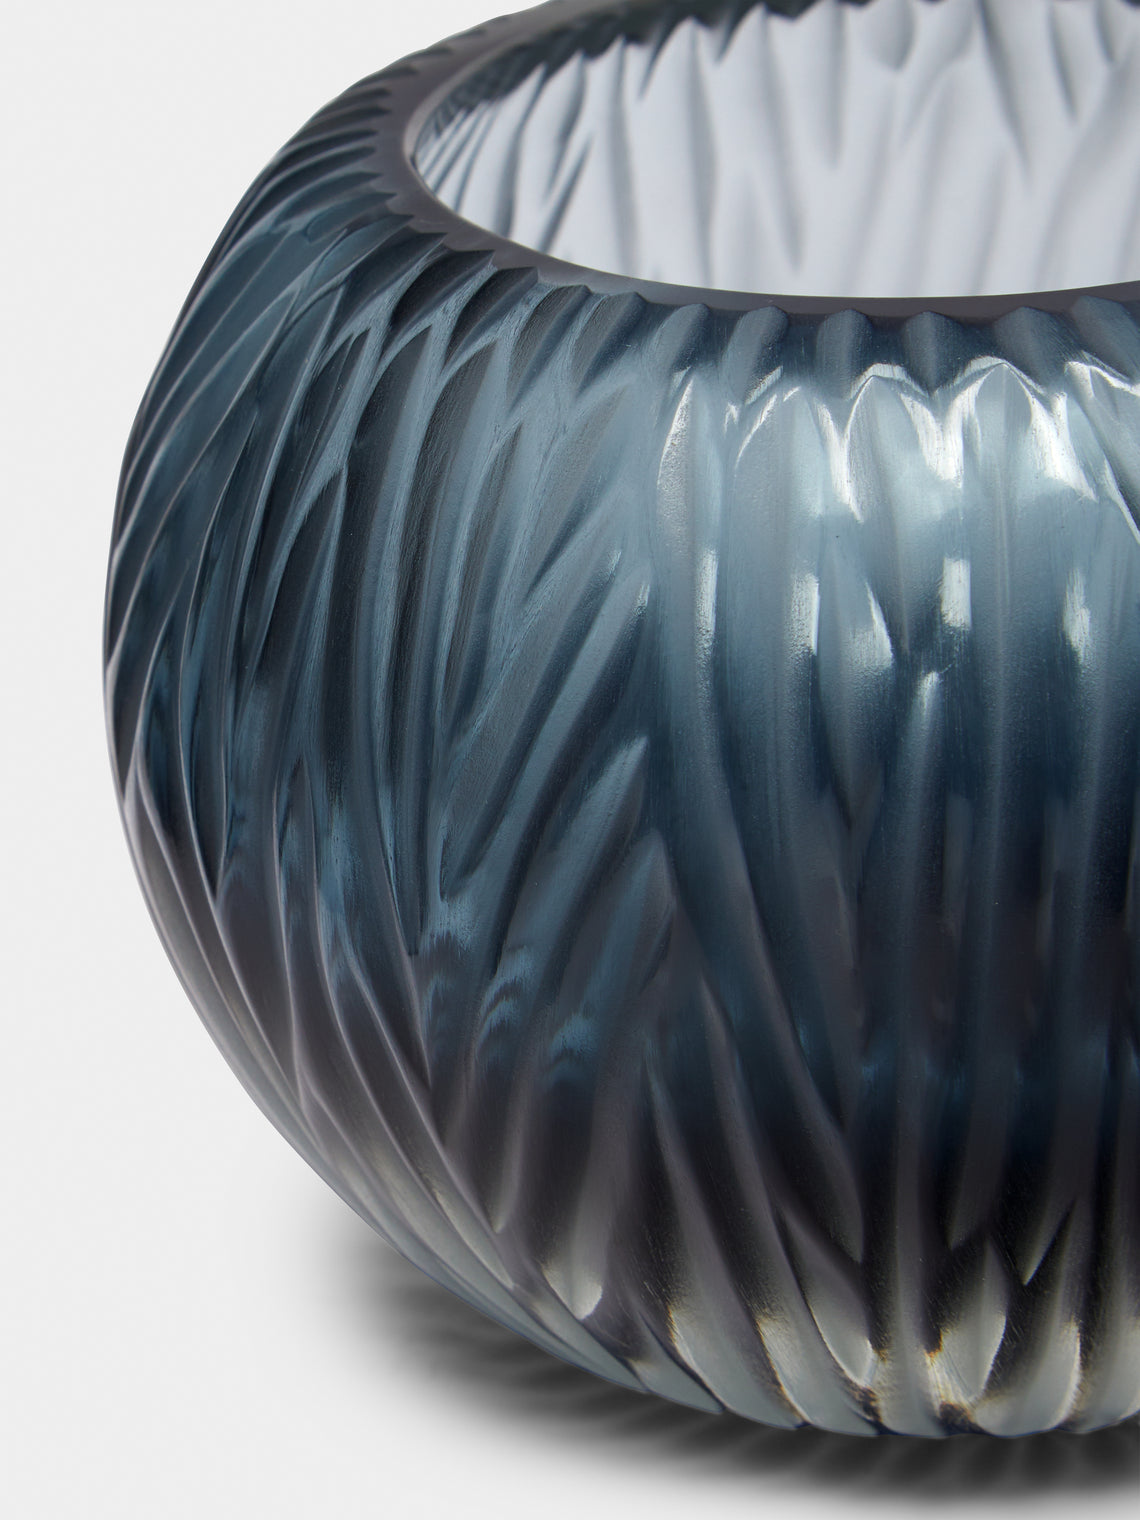 Micheluzzi Glass - Bocia Oceano Hand-Blown Murano Glass Vase - Blue - ABASK